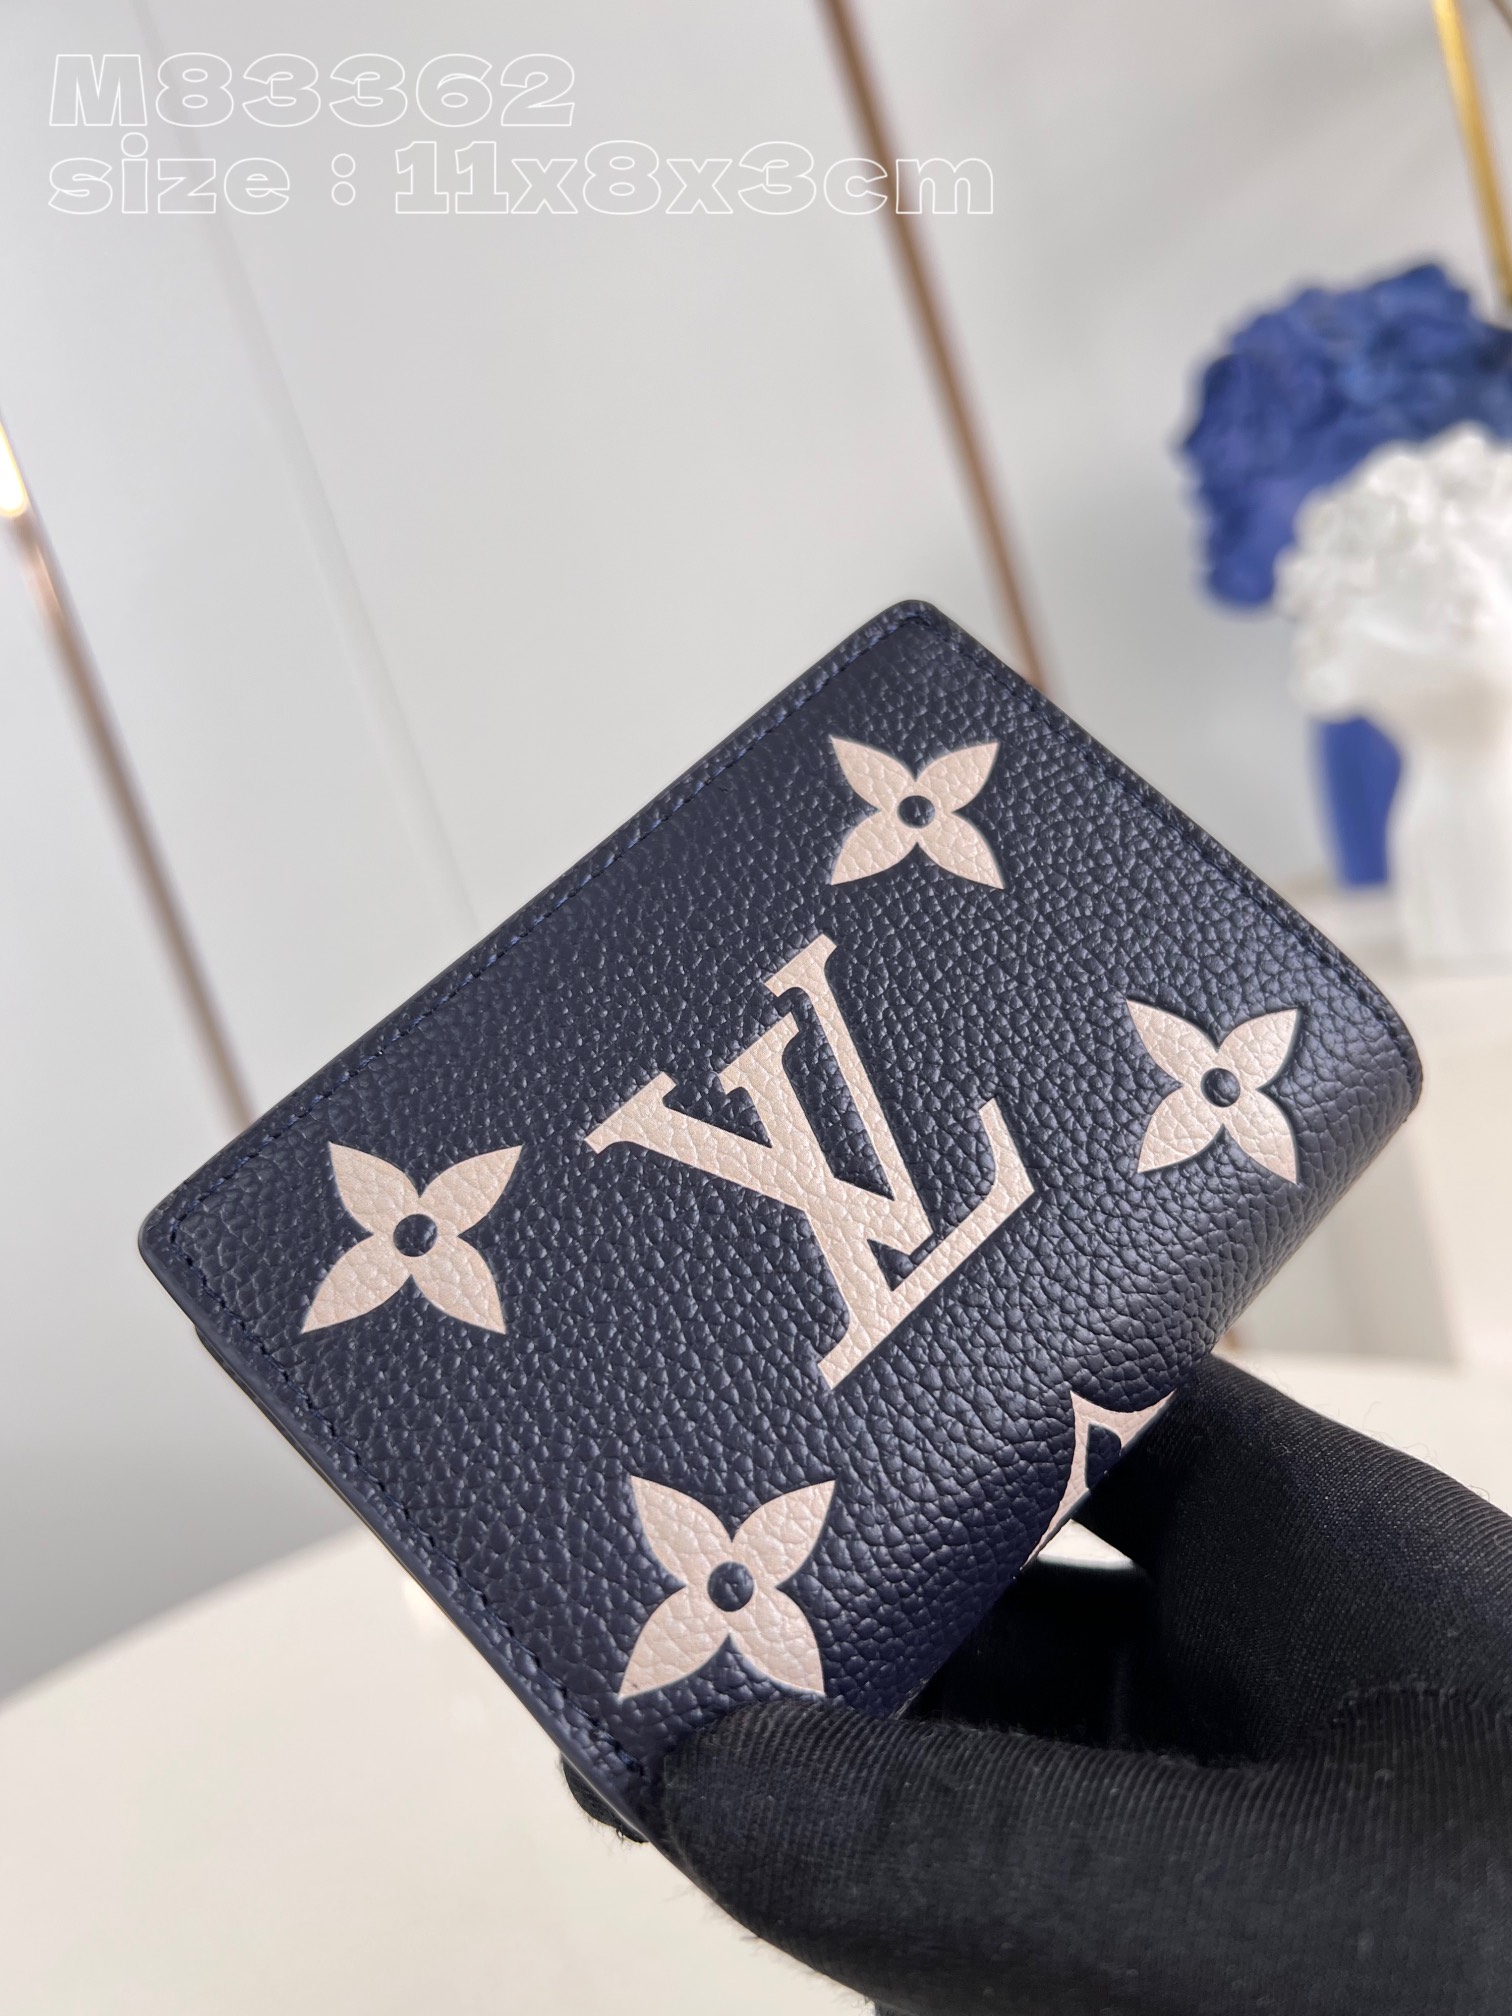 Louis Vuitton 1: 1
 Geldbörse Blau Dunkelblau Empreinte​ Rindsleder Fashion M83362